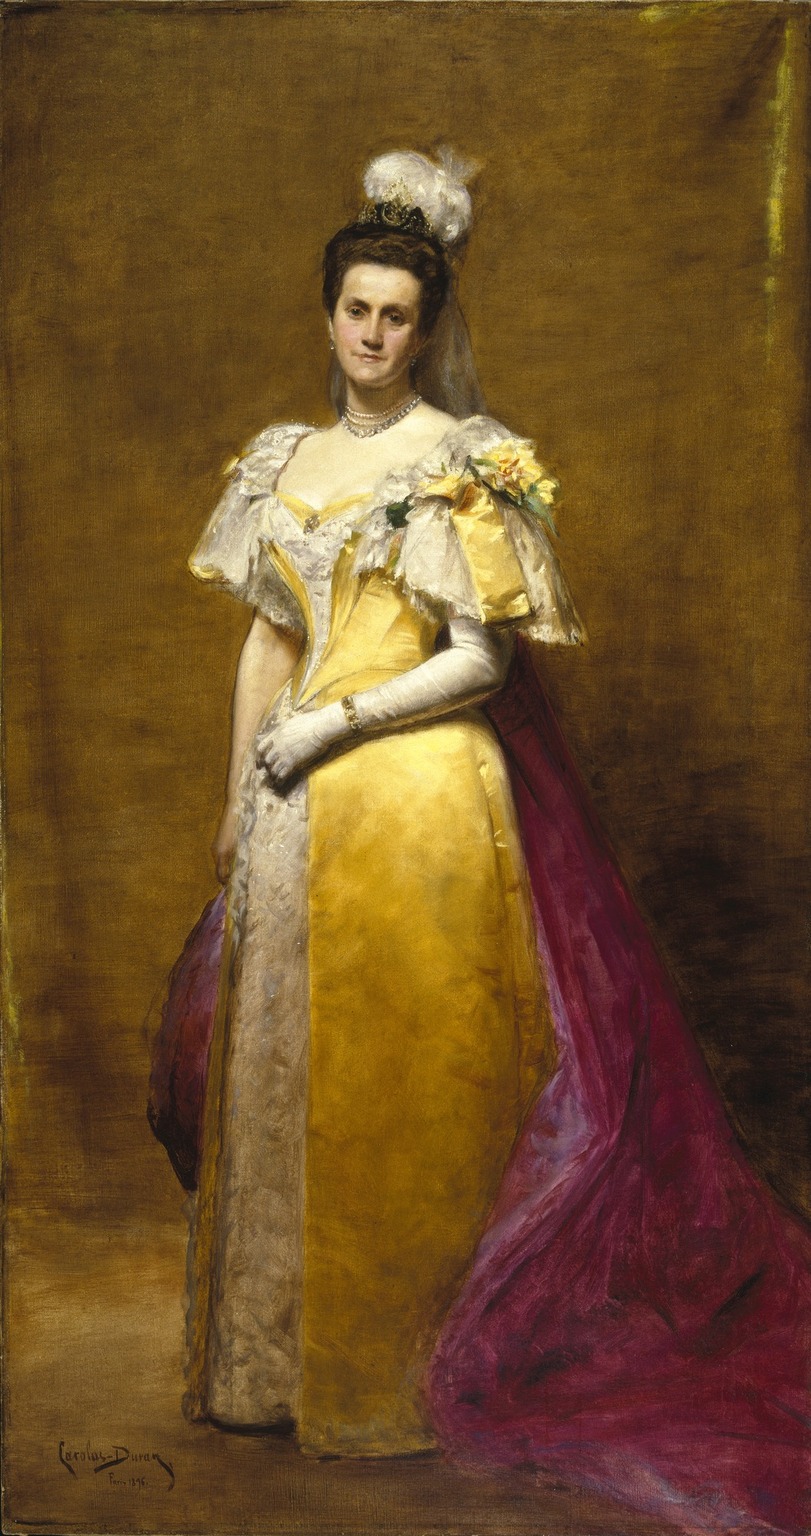 黄色いドレスを着てポーズをとる女性の絵。